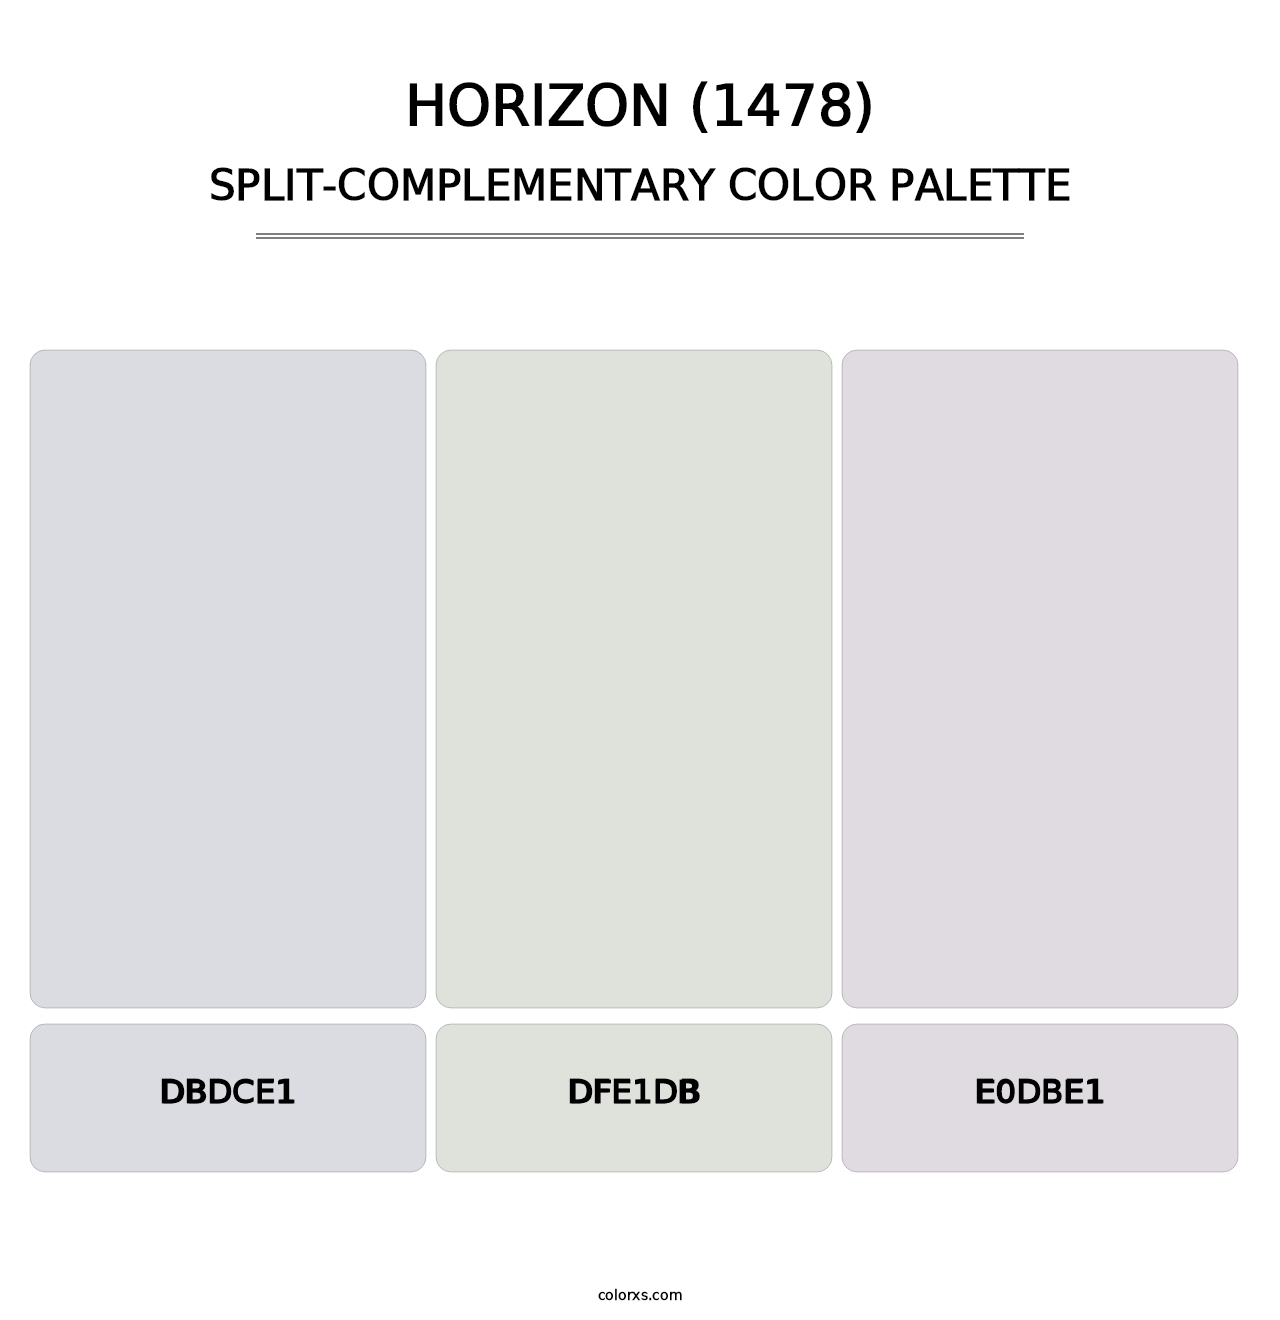 Horizon (1478) - Split-Complementary Color Palette